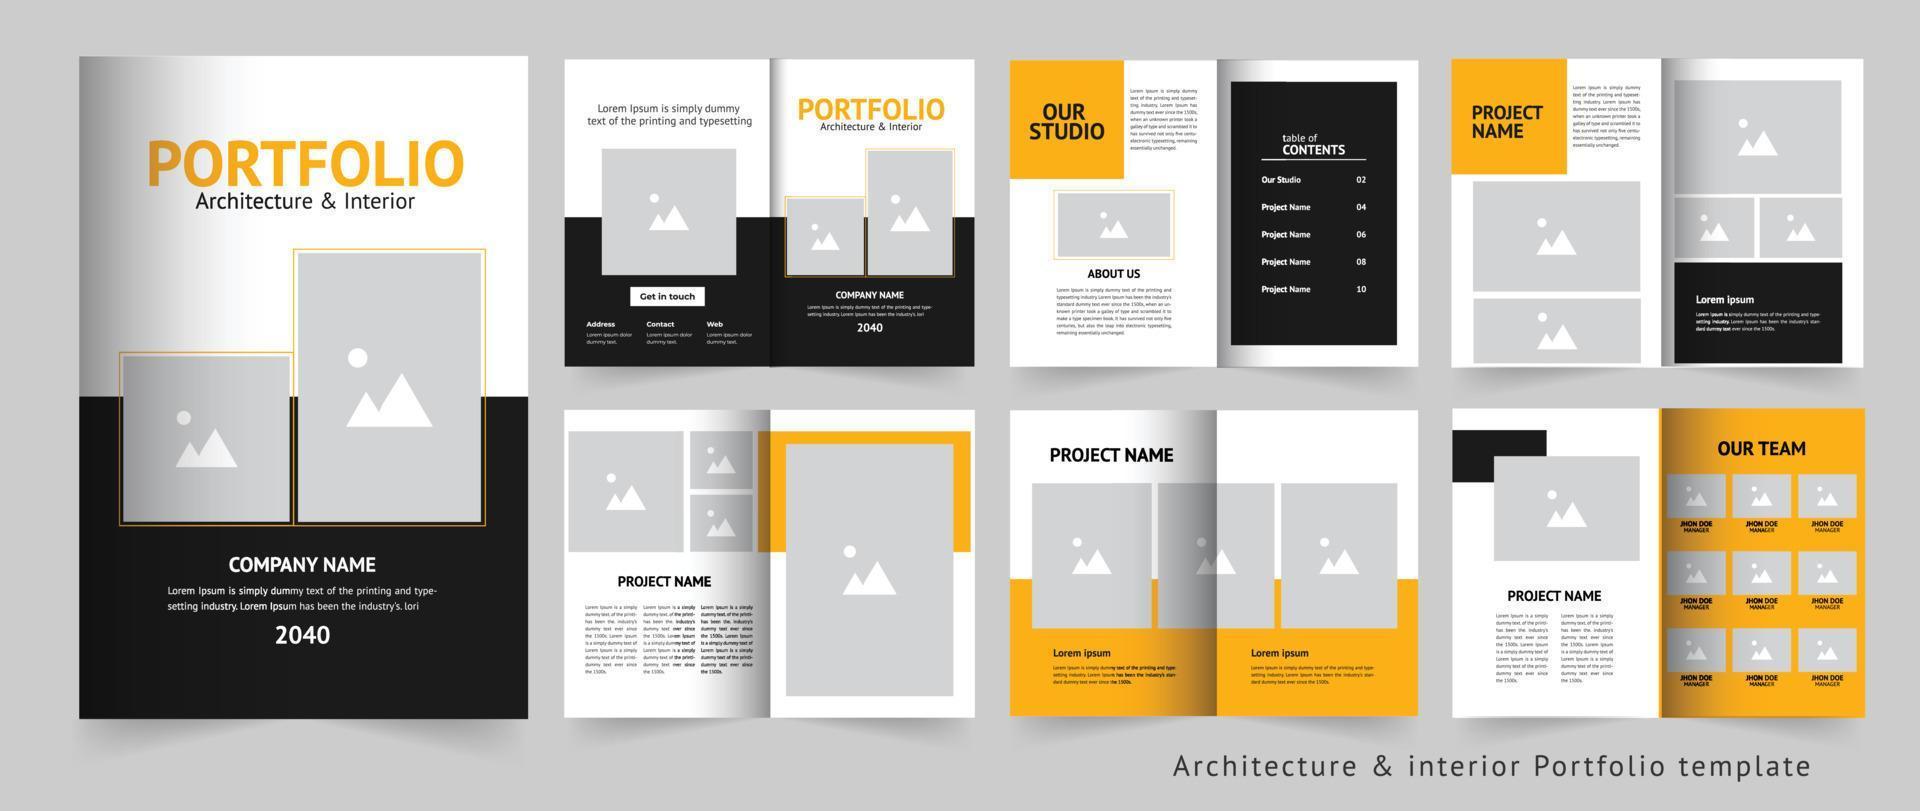 Portfolio or architecture portfolio or interior portfolio vector